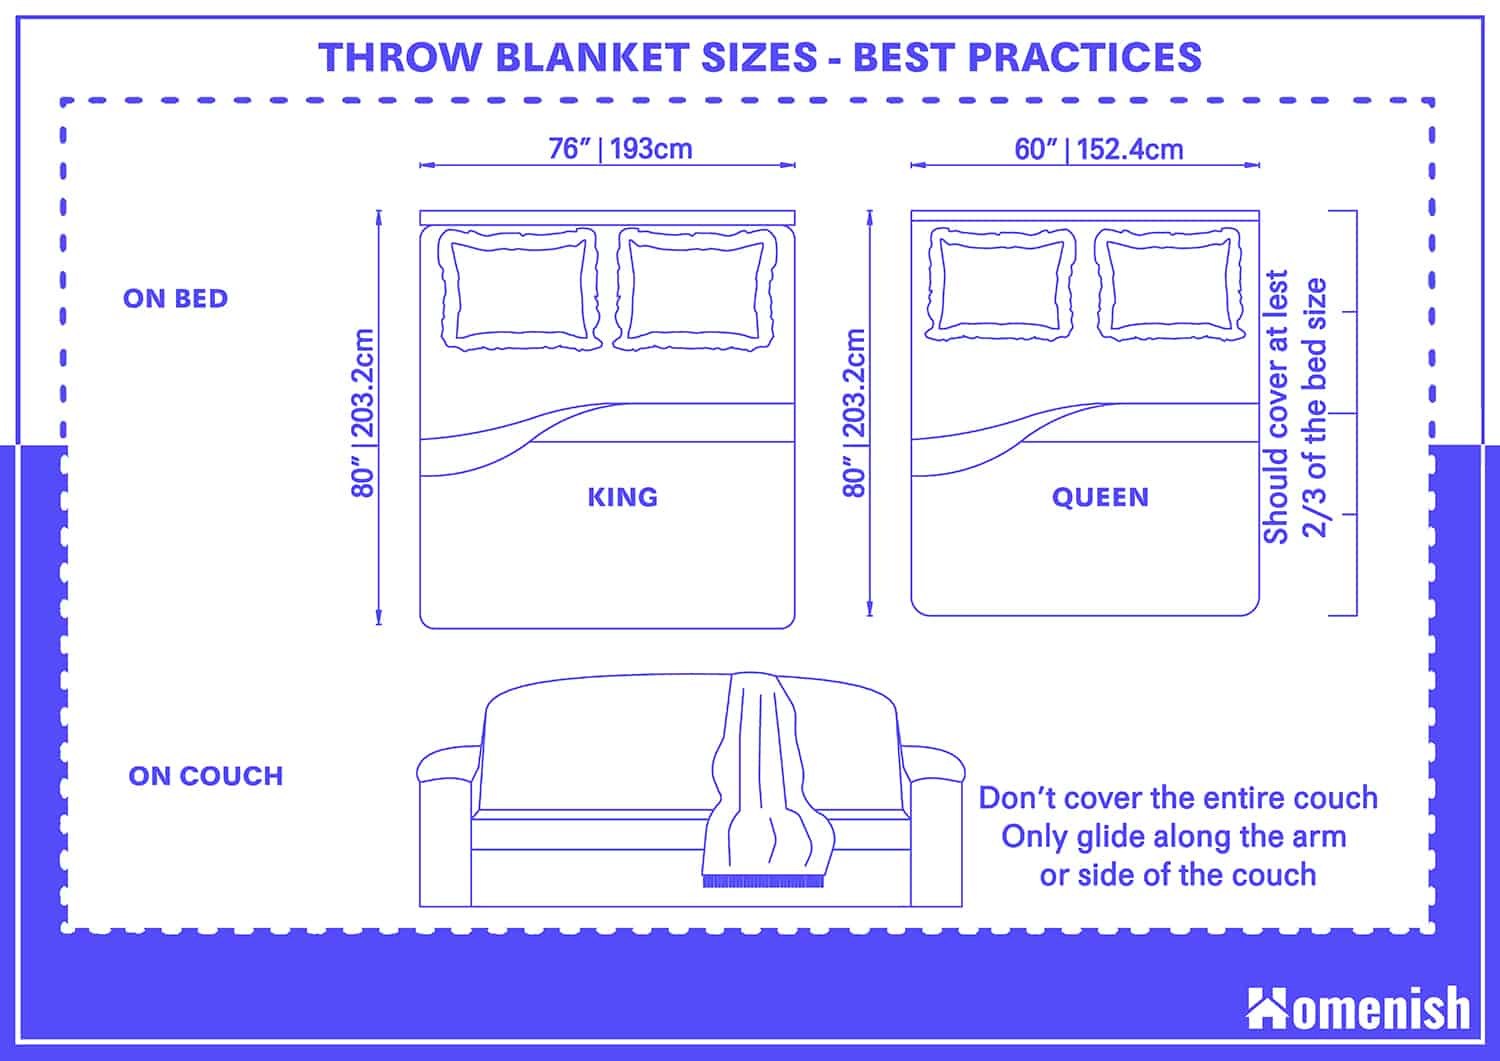 毛毯的尺寸-最佳實踐